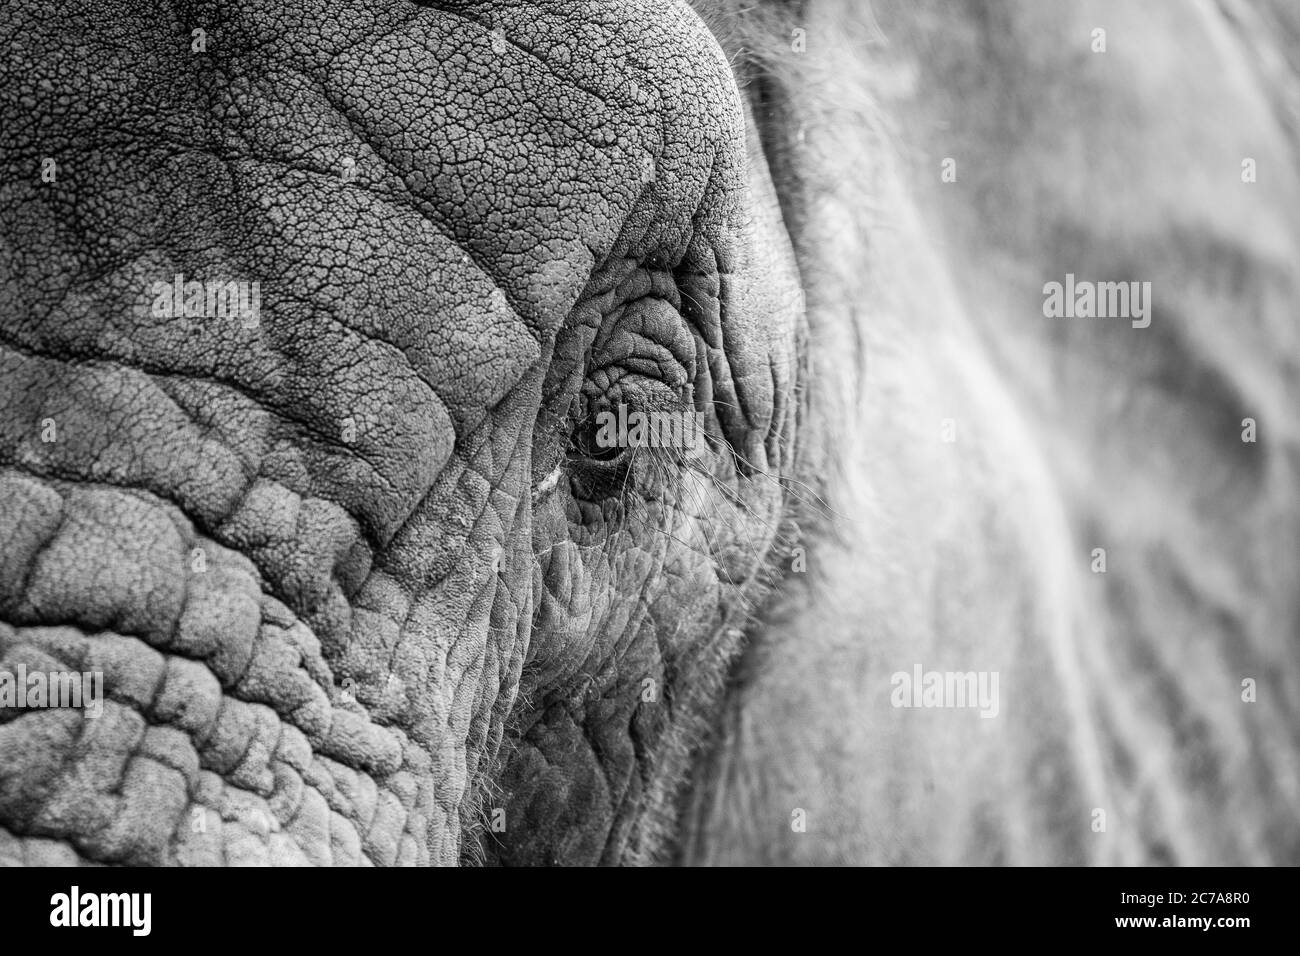 Vue détaillée et monochrome de la tête gros plan sur l'éléphant d'Afrique (Loxodonta africana) isolé en plein air à West Midland Safari Park, Royaume-Uni. Banque D'Images